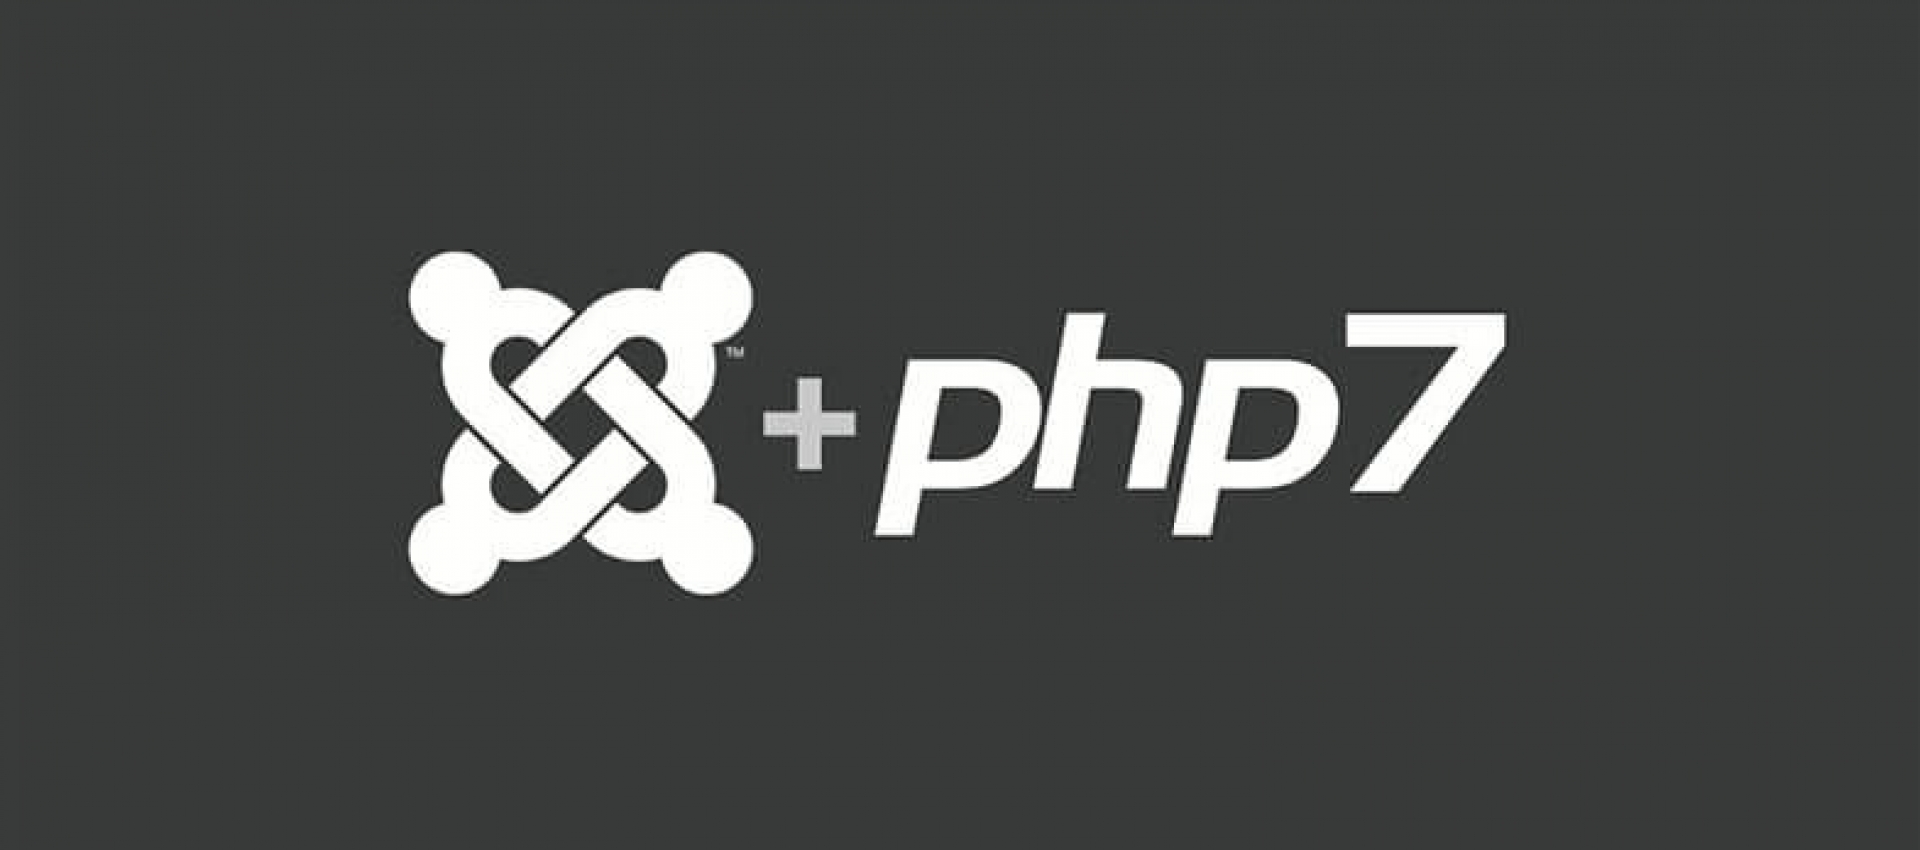 Joomla! ve PHP 7